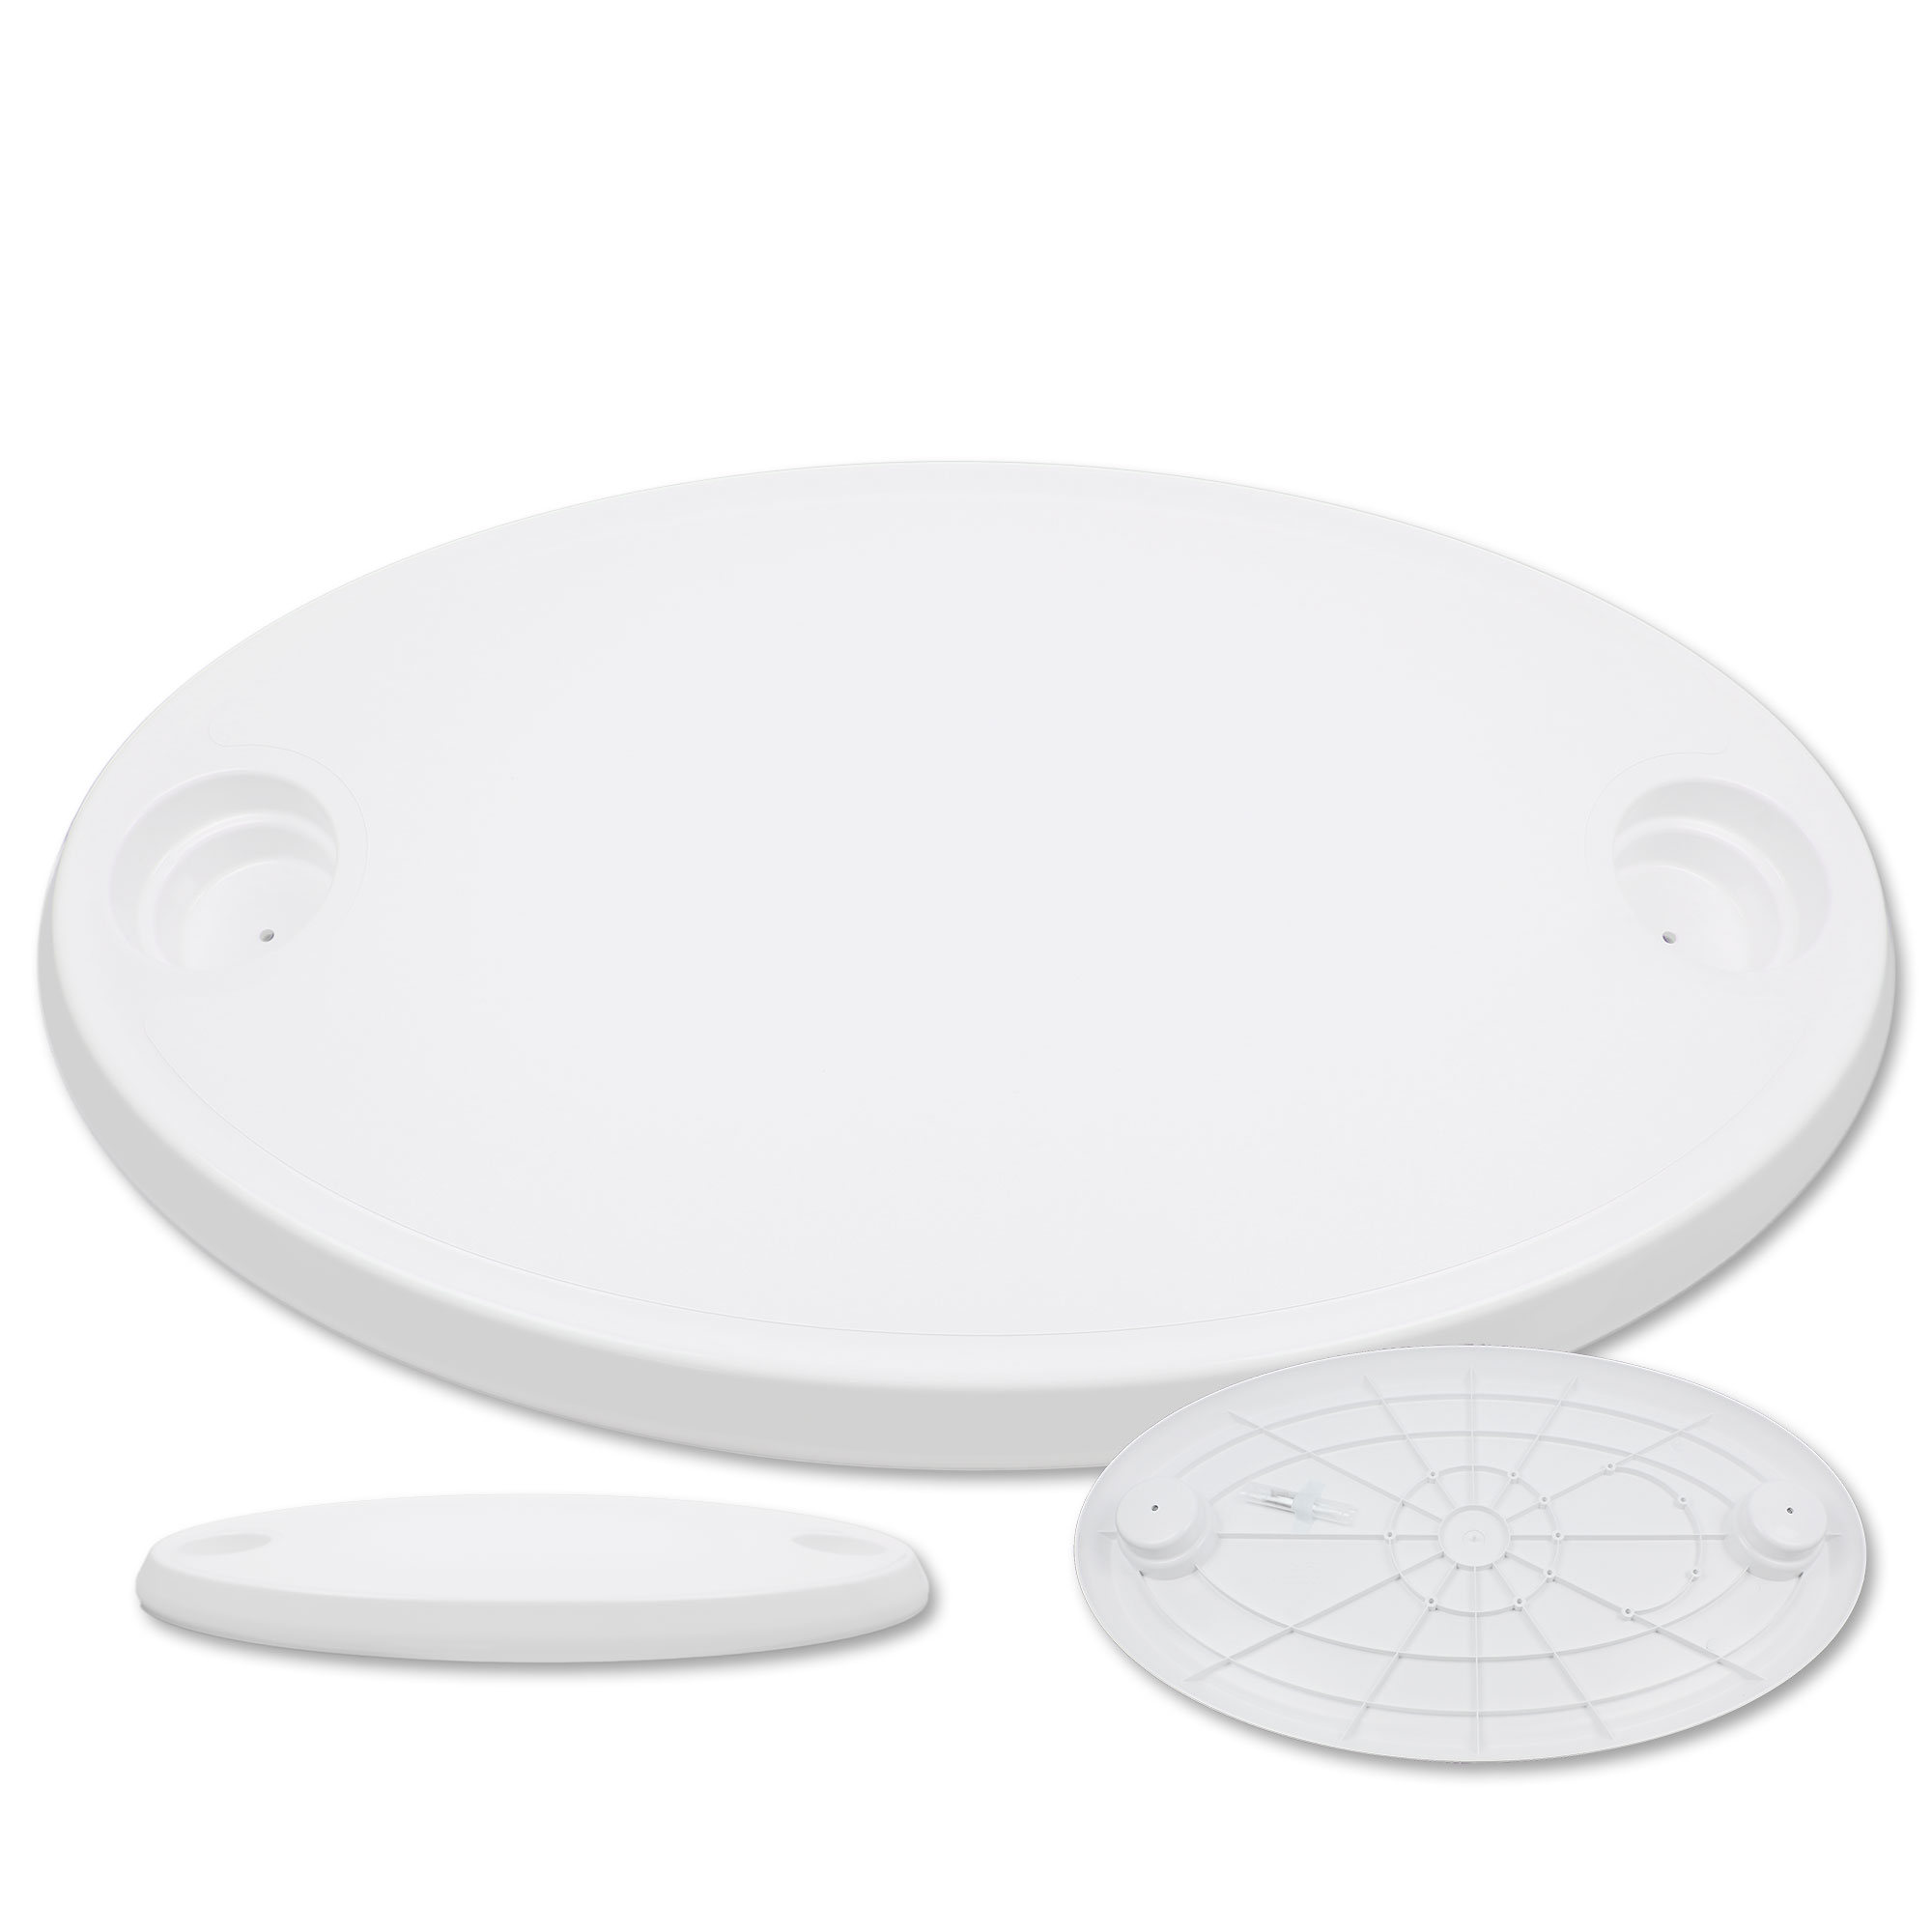 Tischplatte oval, Kunststoff weiß mit Getränkehaltern, 76 x 45 cm